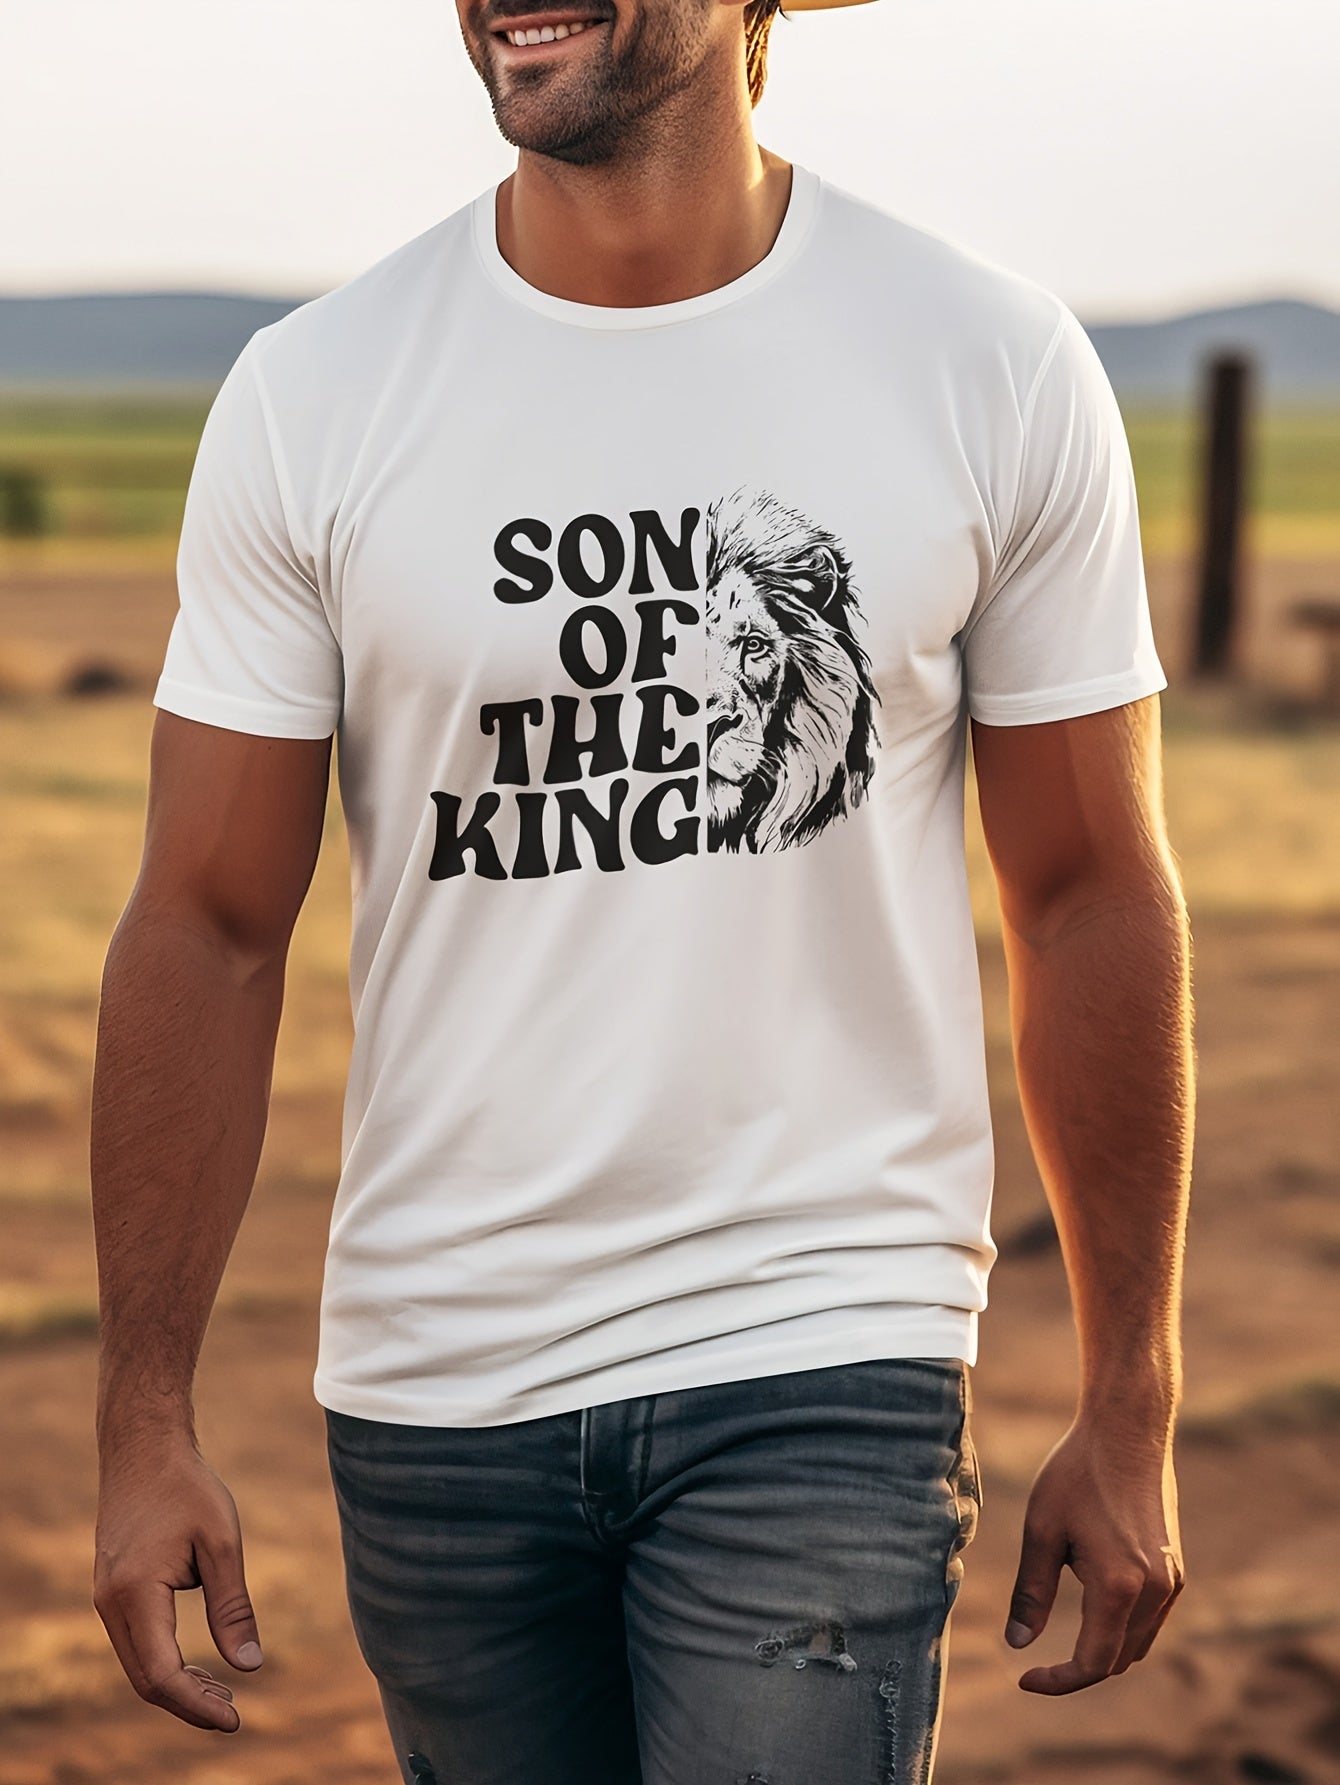 Son Of The King Men's Christian T-shirt claimedbygoddesigns